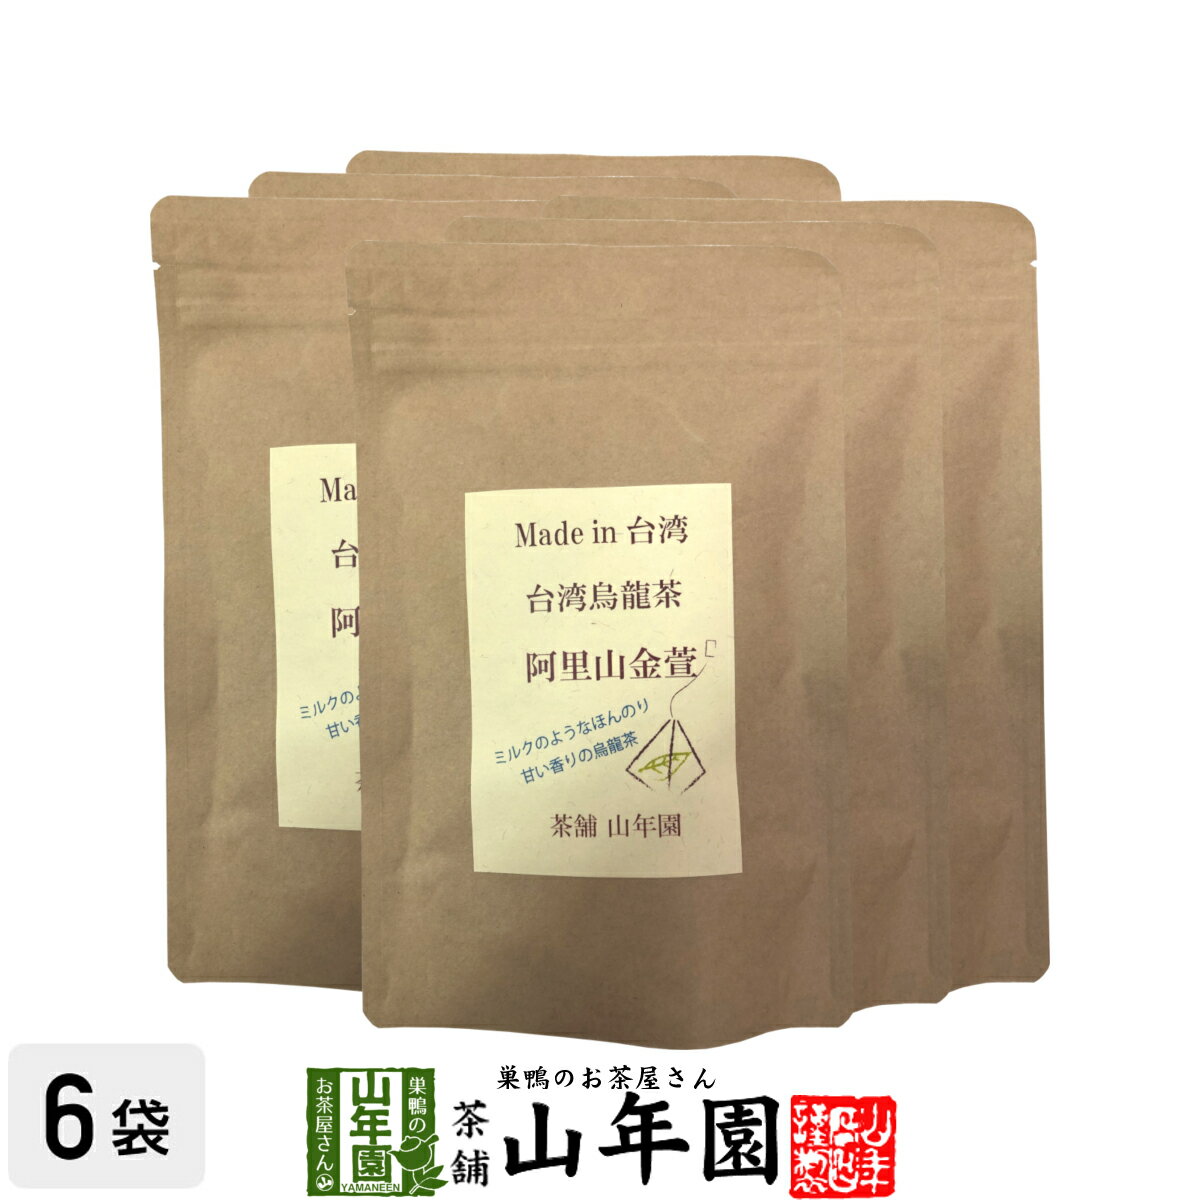 台湾烏龍茶 阿里山金萱 2g×12包×6袋セット台湾の阿里山で収穫された茶葉を使った烏龍茶 ほのかにミルク..